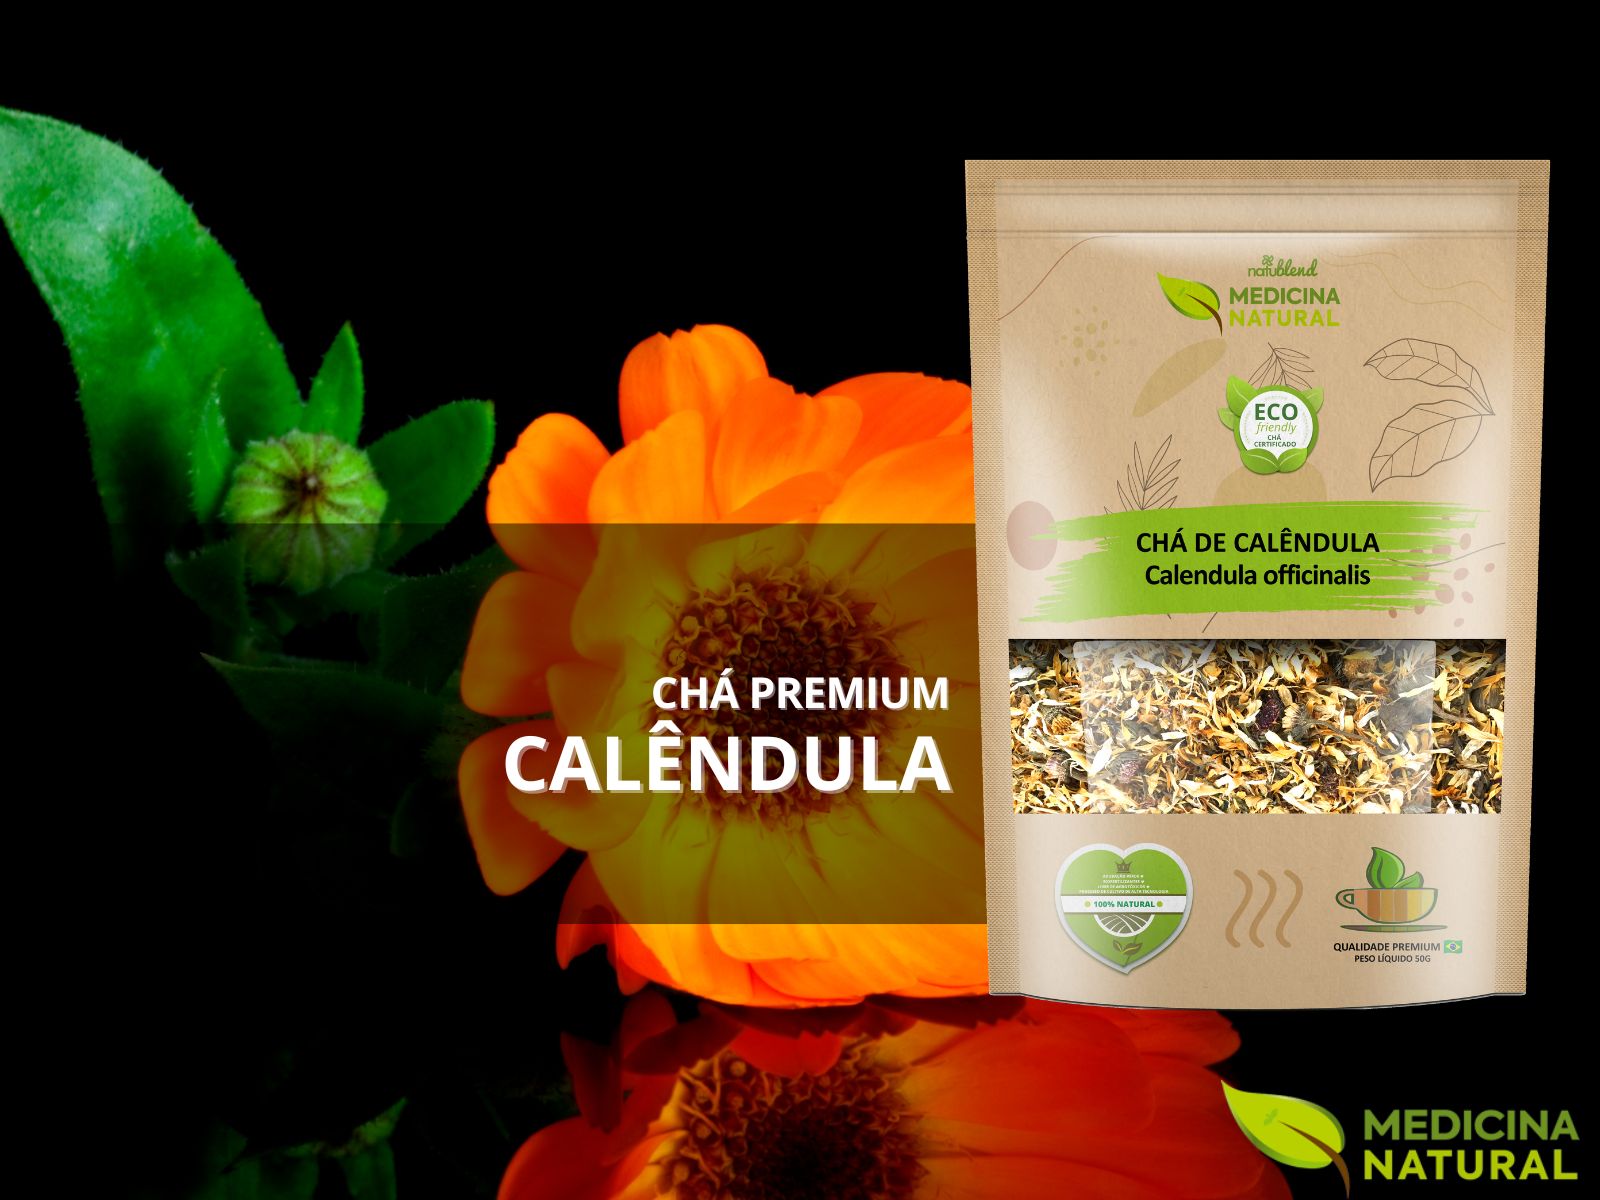 Chá de Calêndula - Calendula officinalis -Medicina Natural